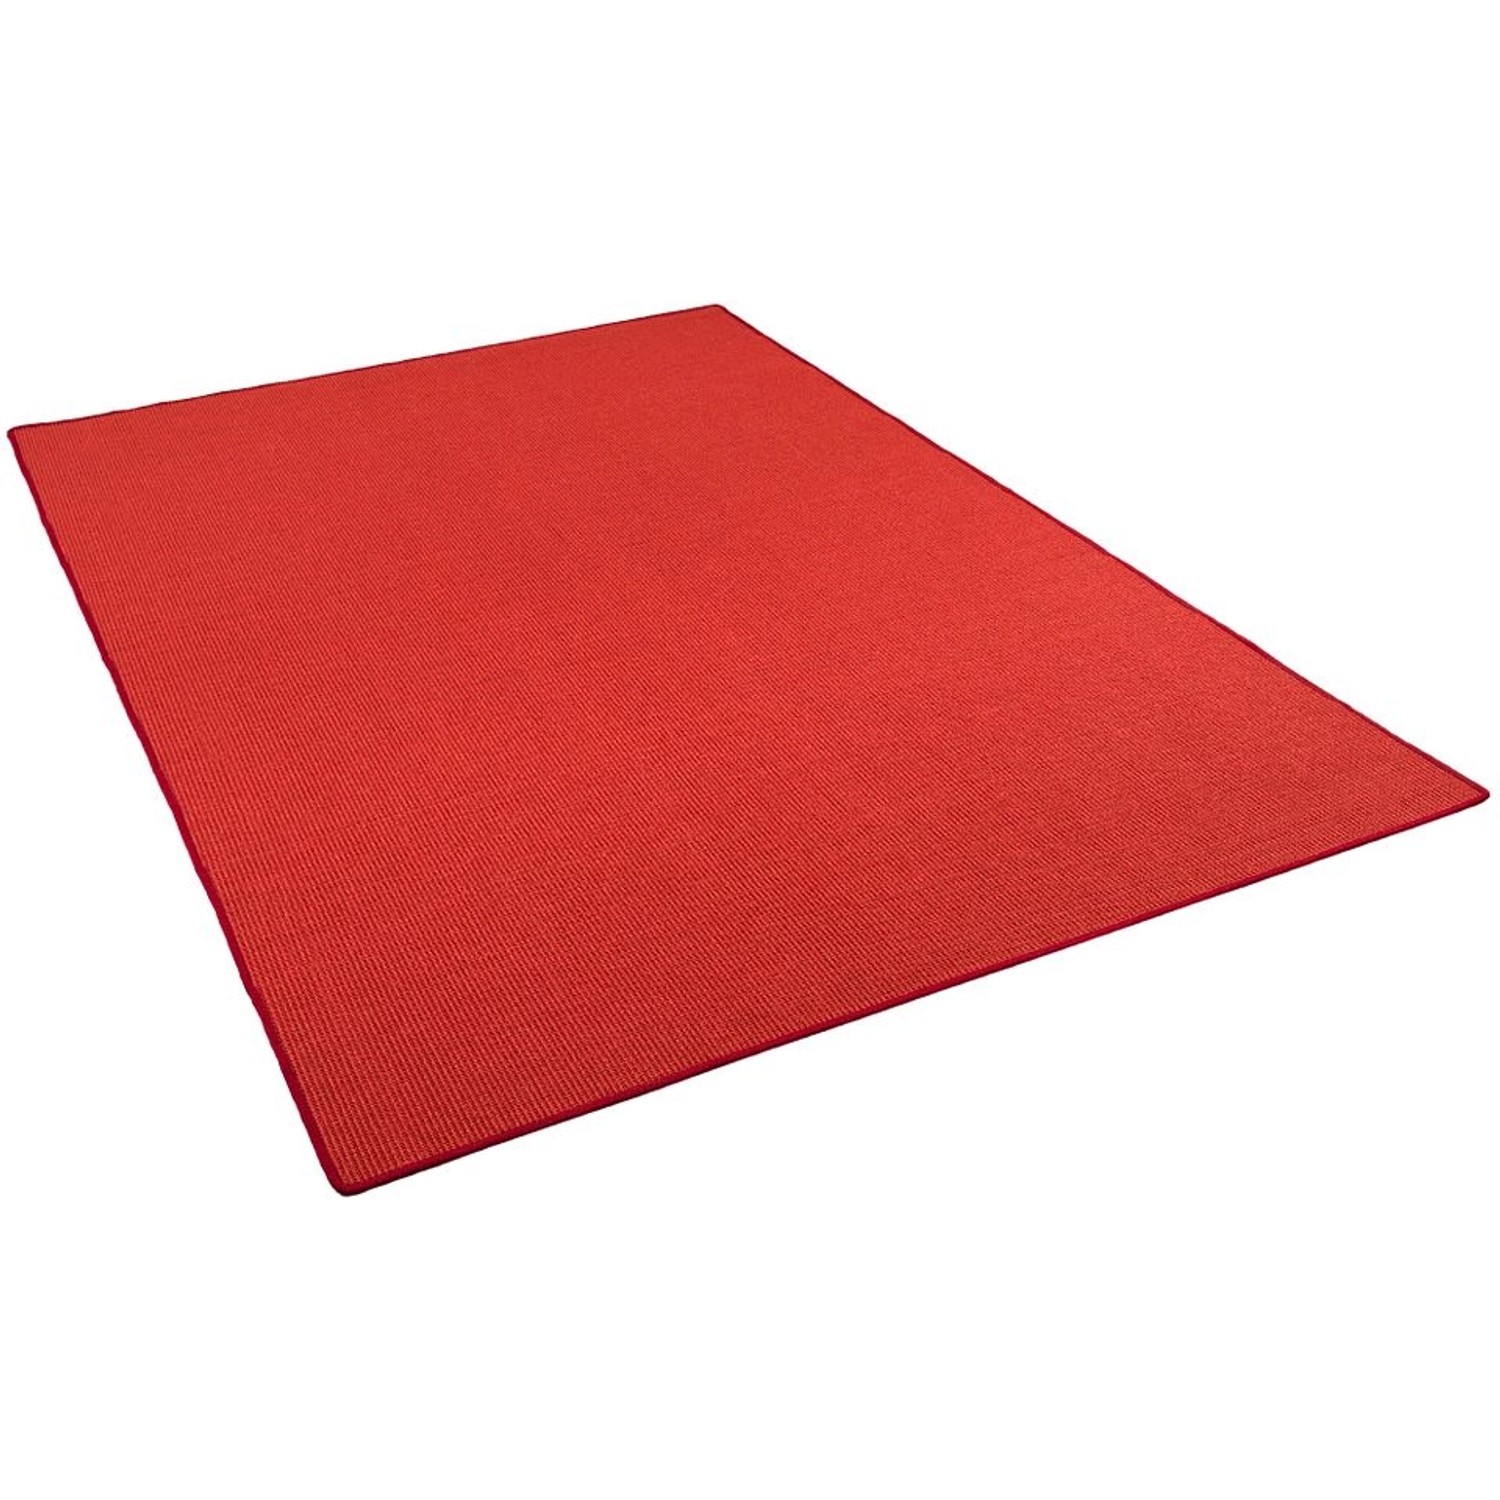 Snapstyle Sisal Natur Teppich Klassisch Rot  200x300 cm